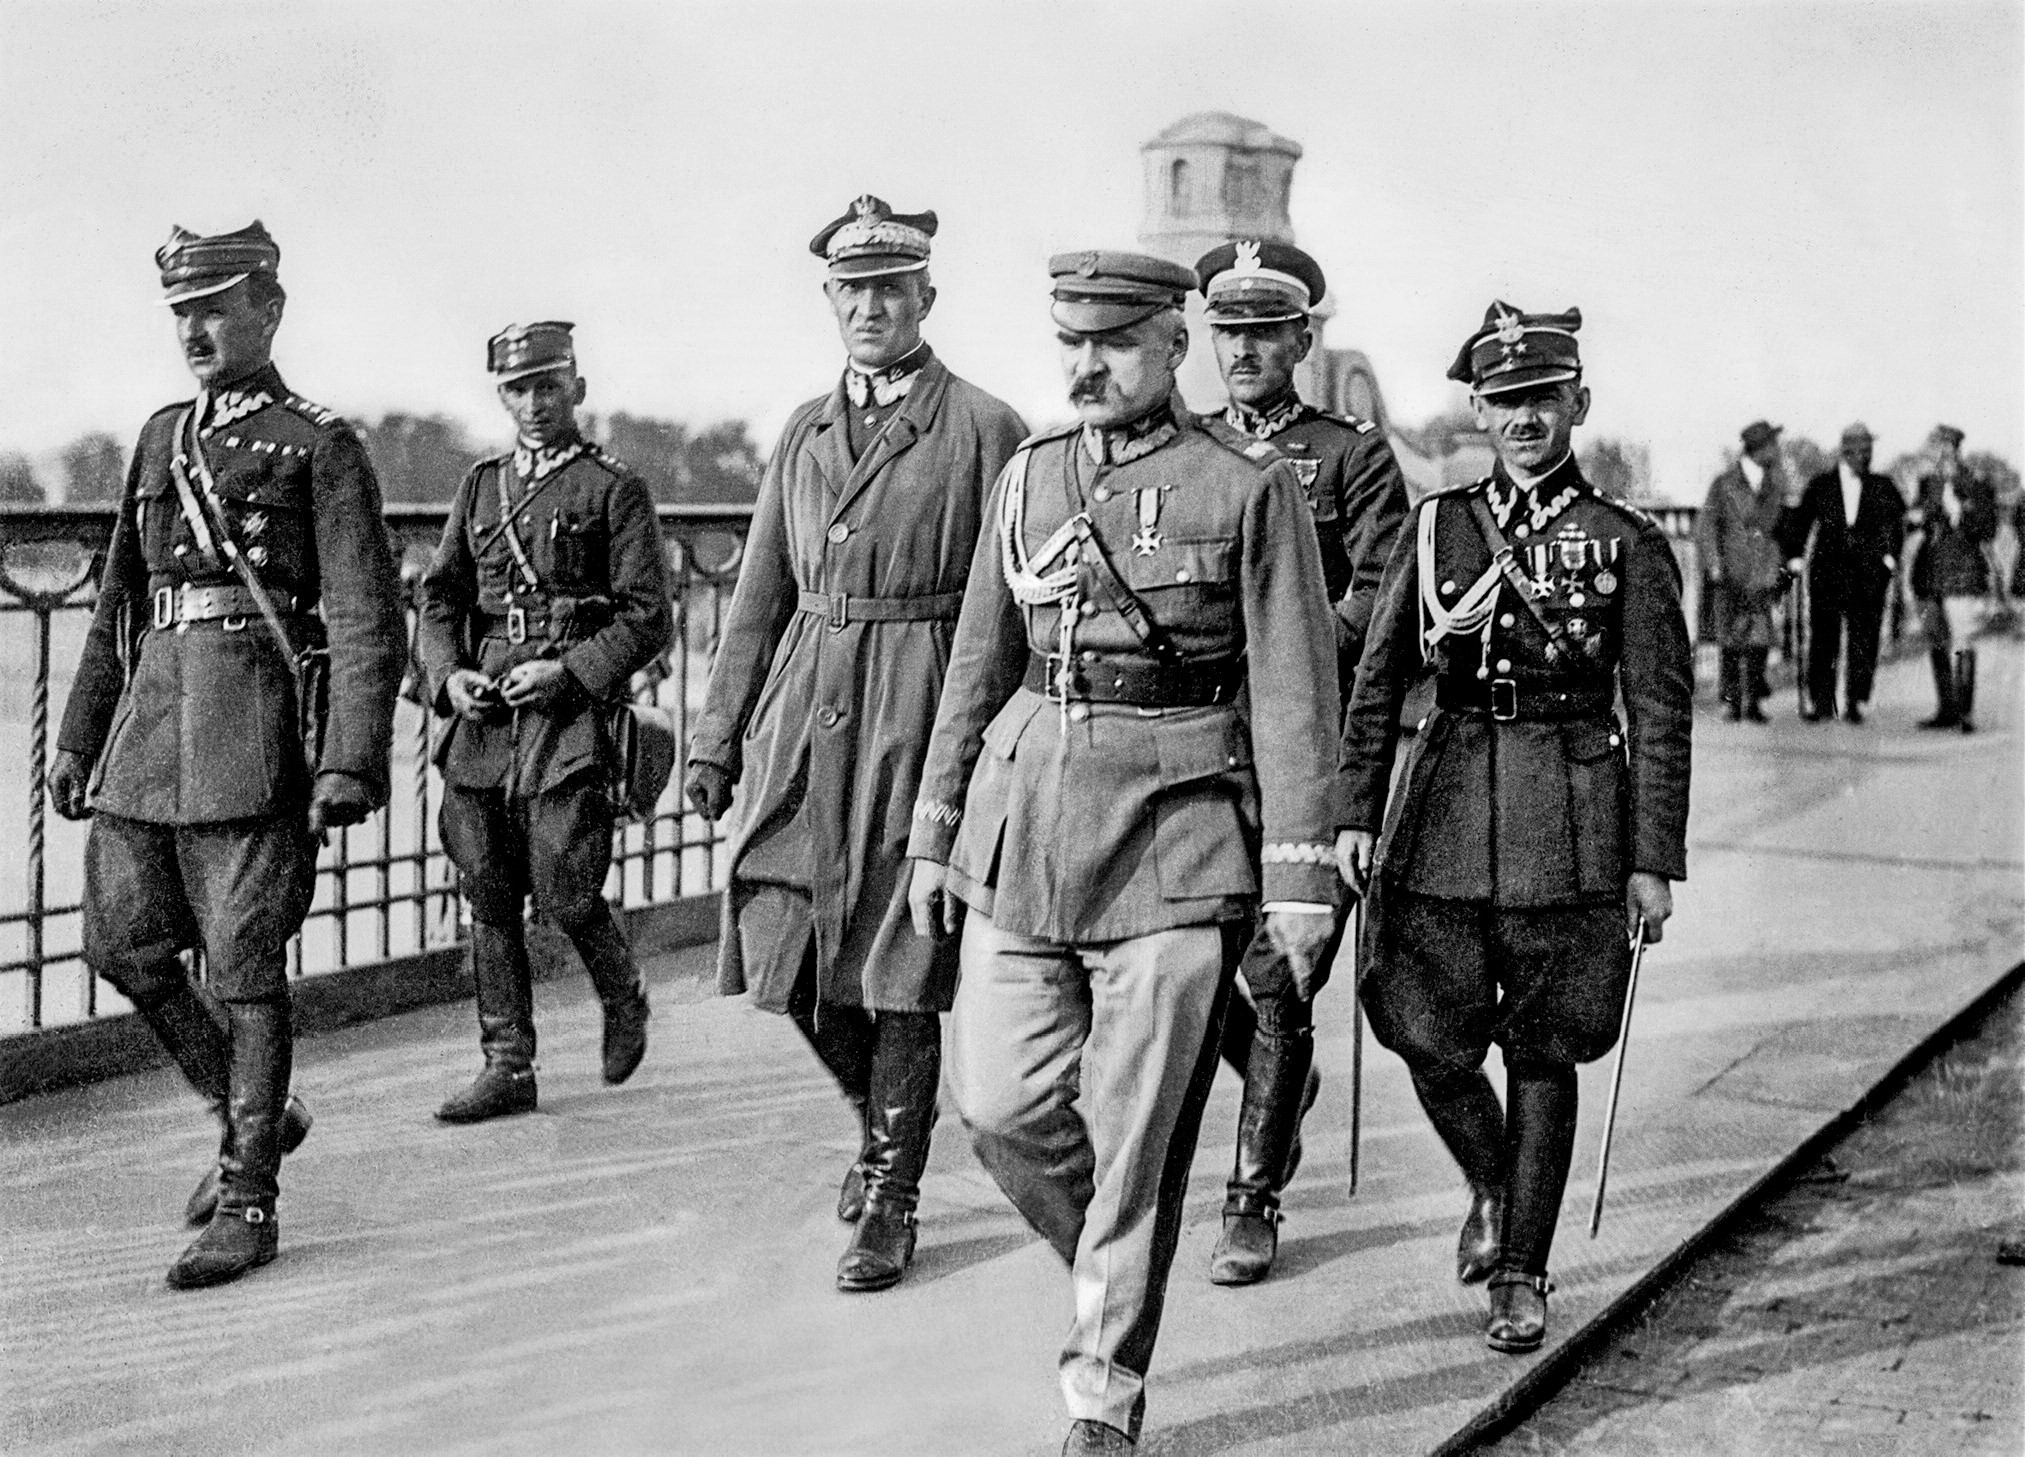 FOTO - Piłsudski in una foto del 1926